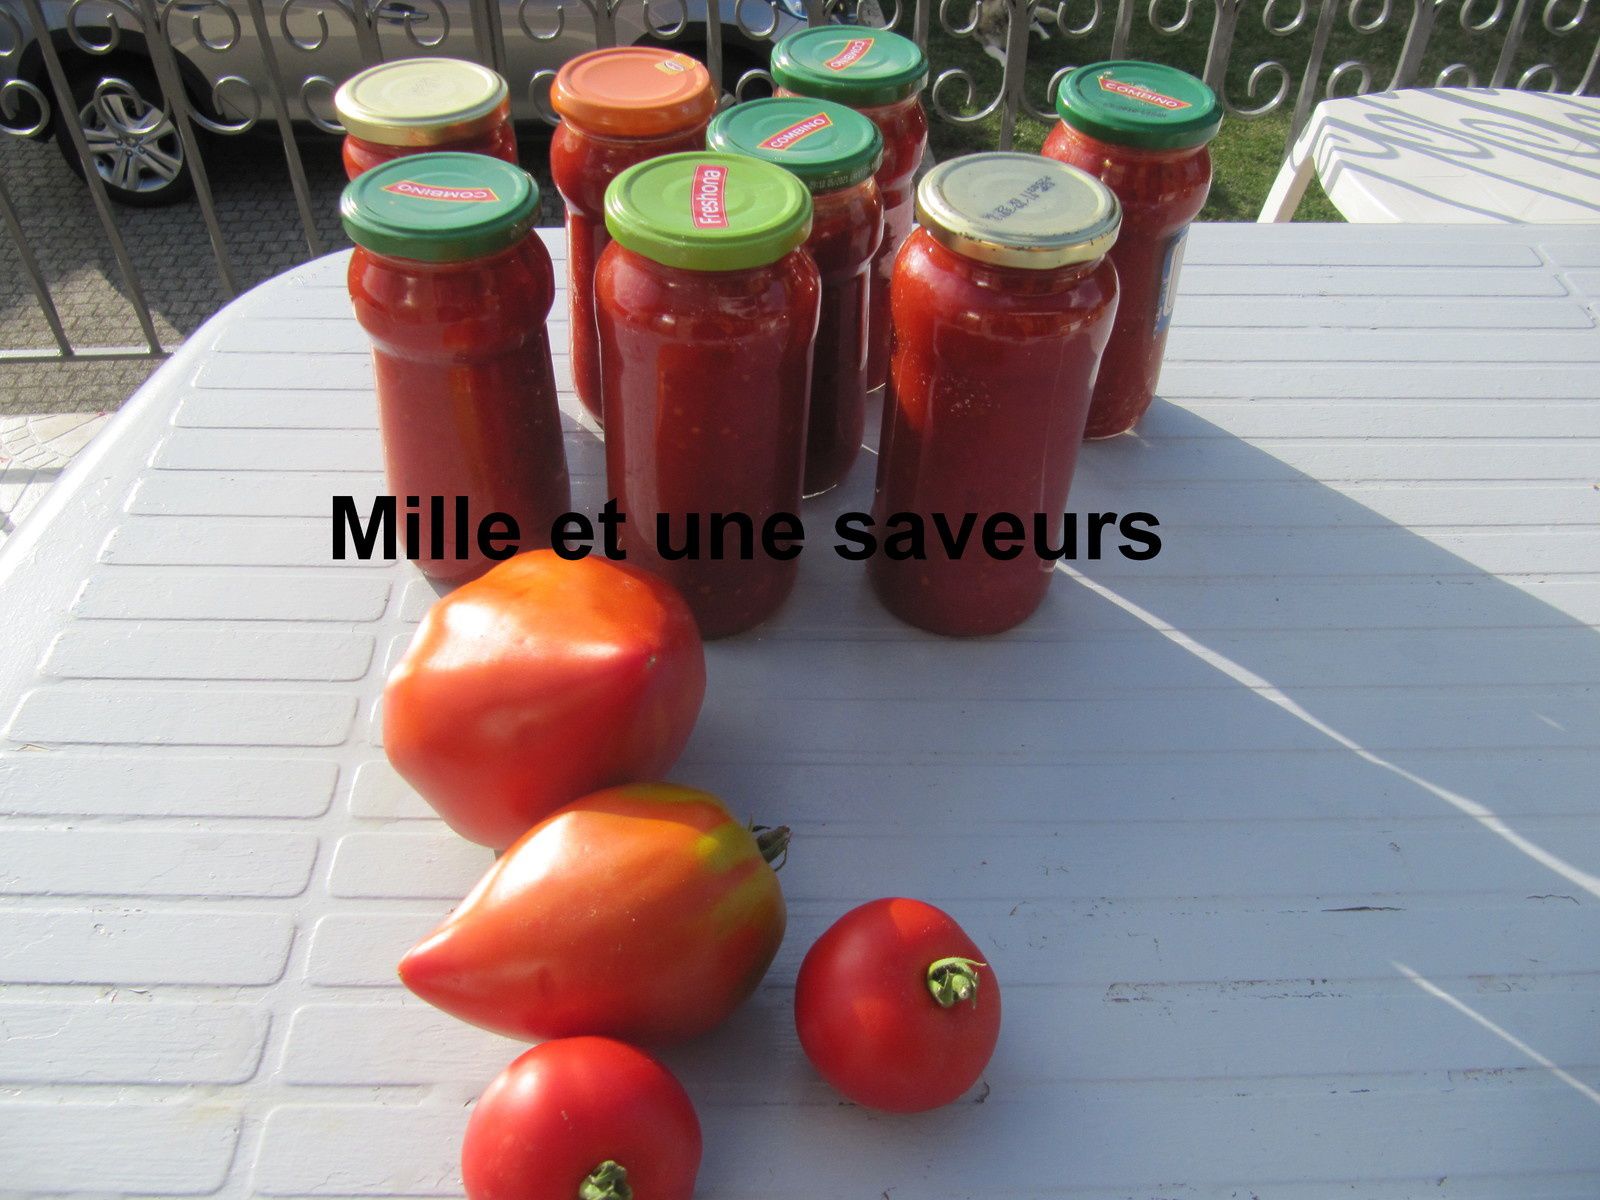 Comment stériliser de la sauce tomate - mille et une saveurs dans ma cuisine